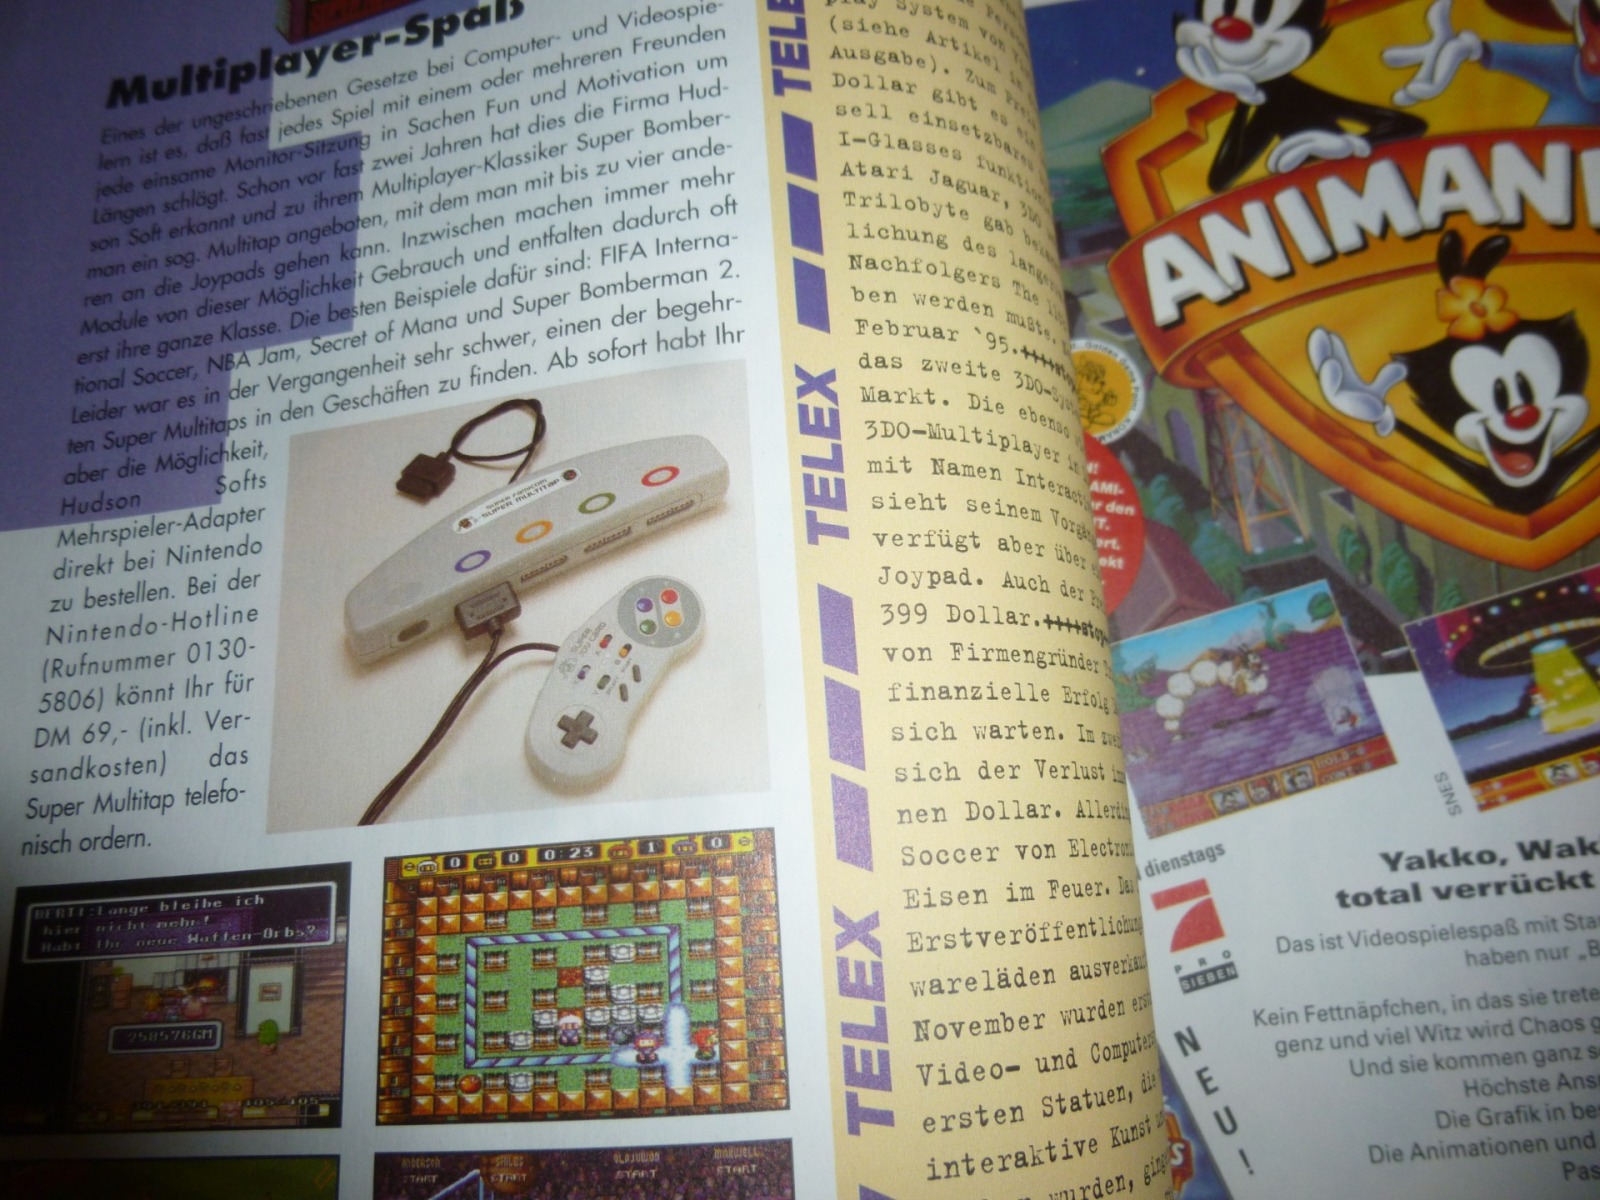 Play Time - Das Computer- und Videospiele-Magazin - Ausgabe 1/95 1995 5